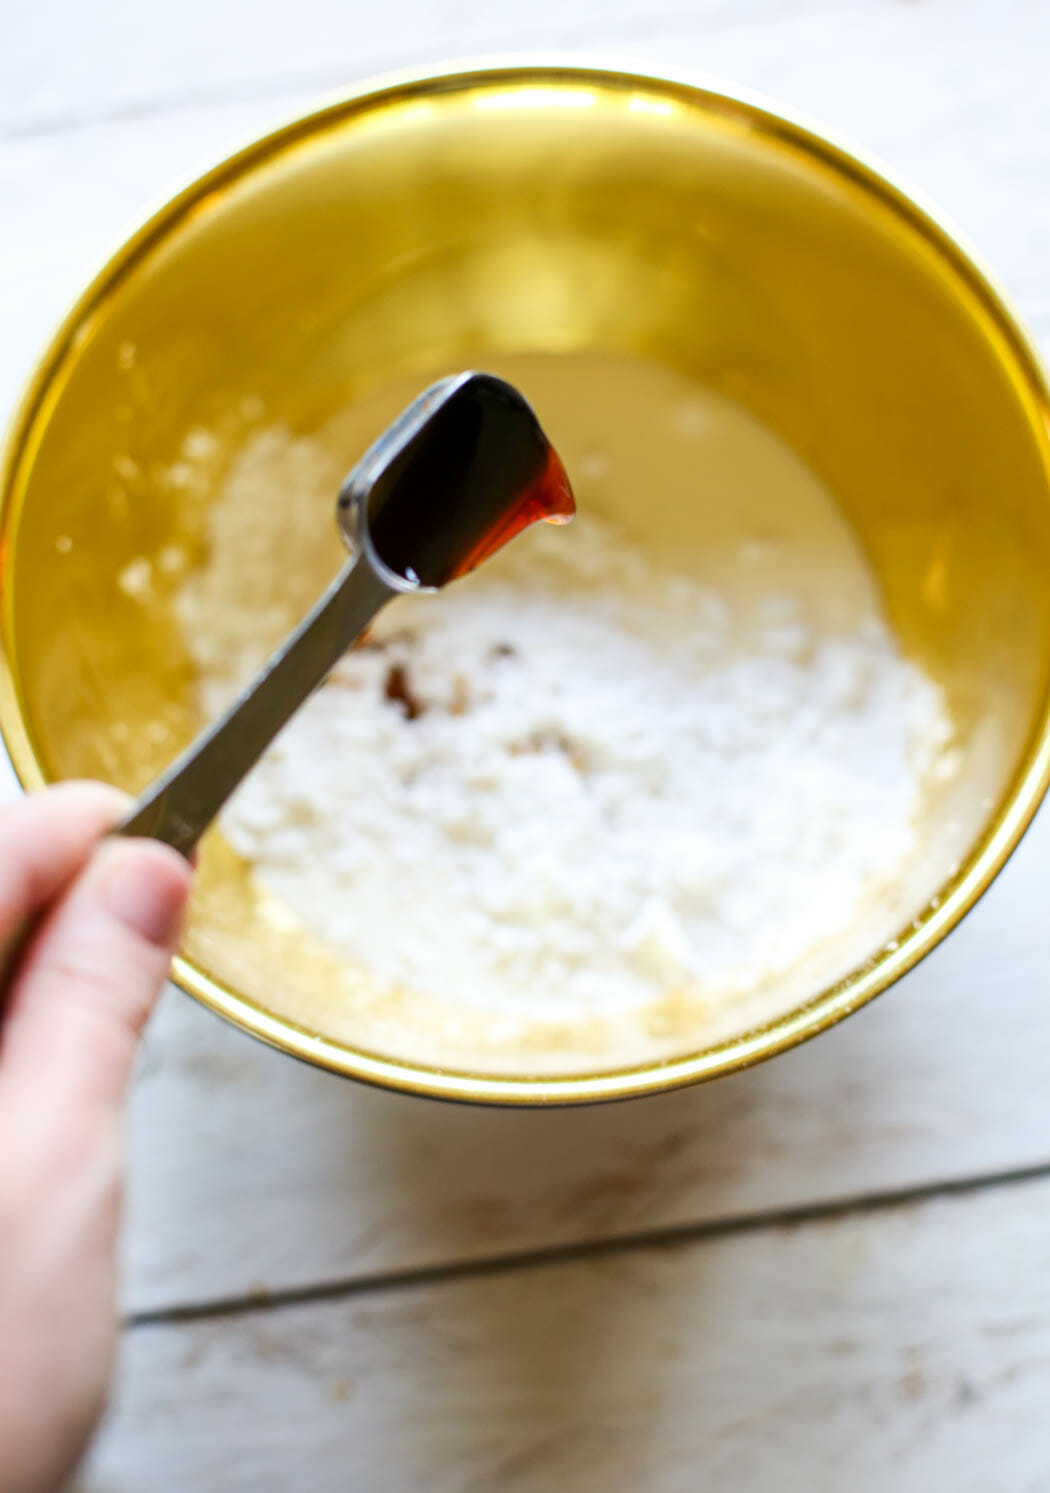 Adding vanilla to sweetened whipped cream